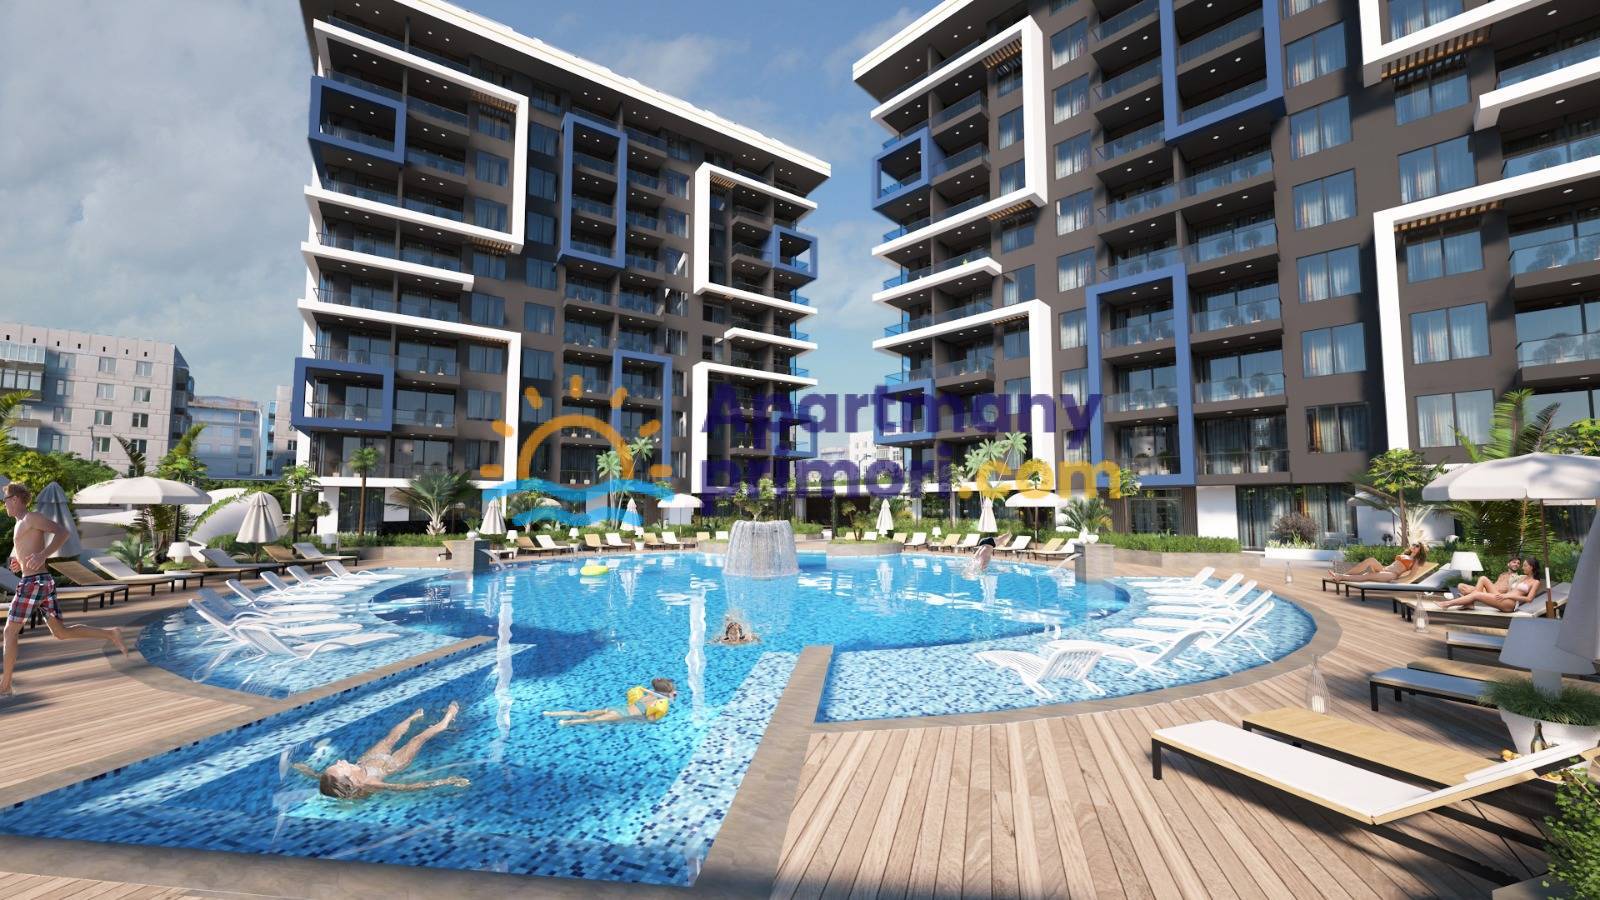 Nové byty na predaj v Turecku - centrum mesta Alanya APM